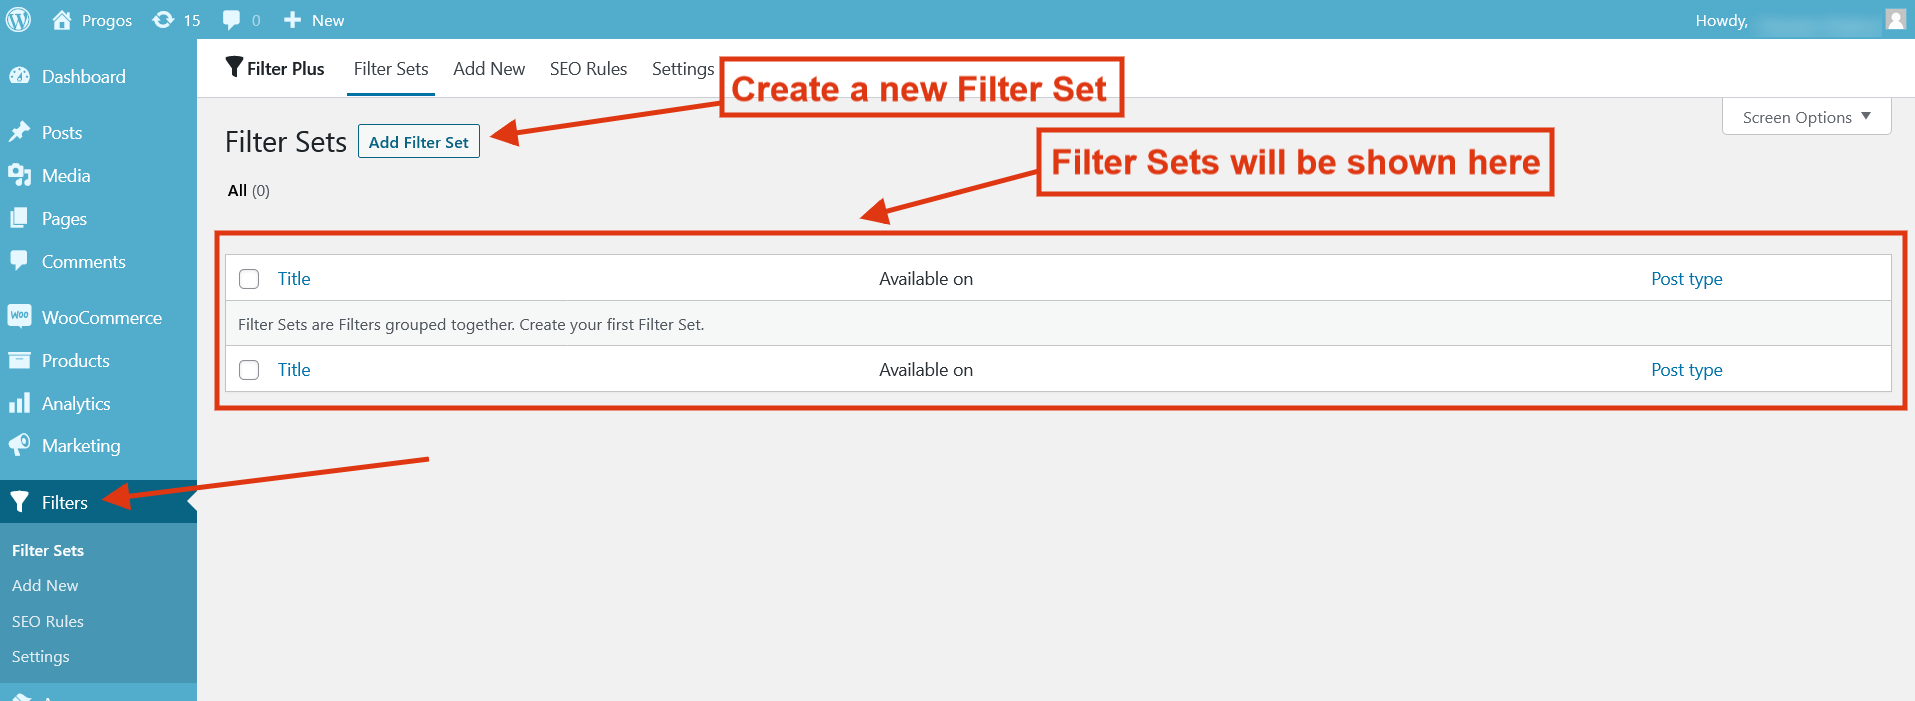 Filter Plus Filter Sets List